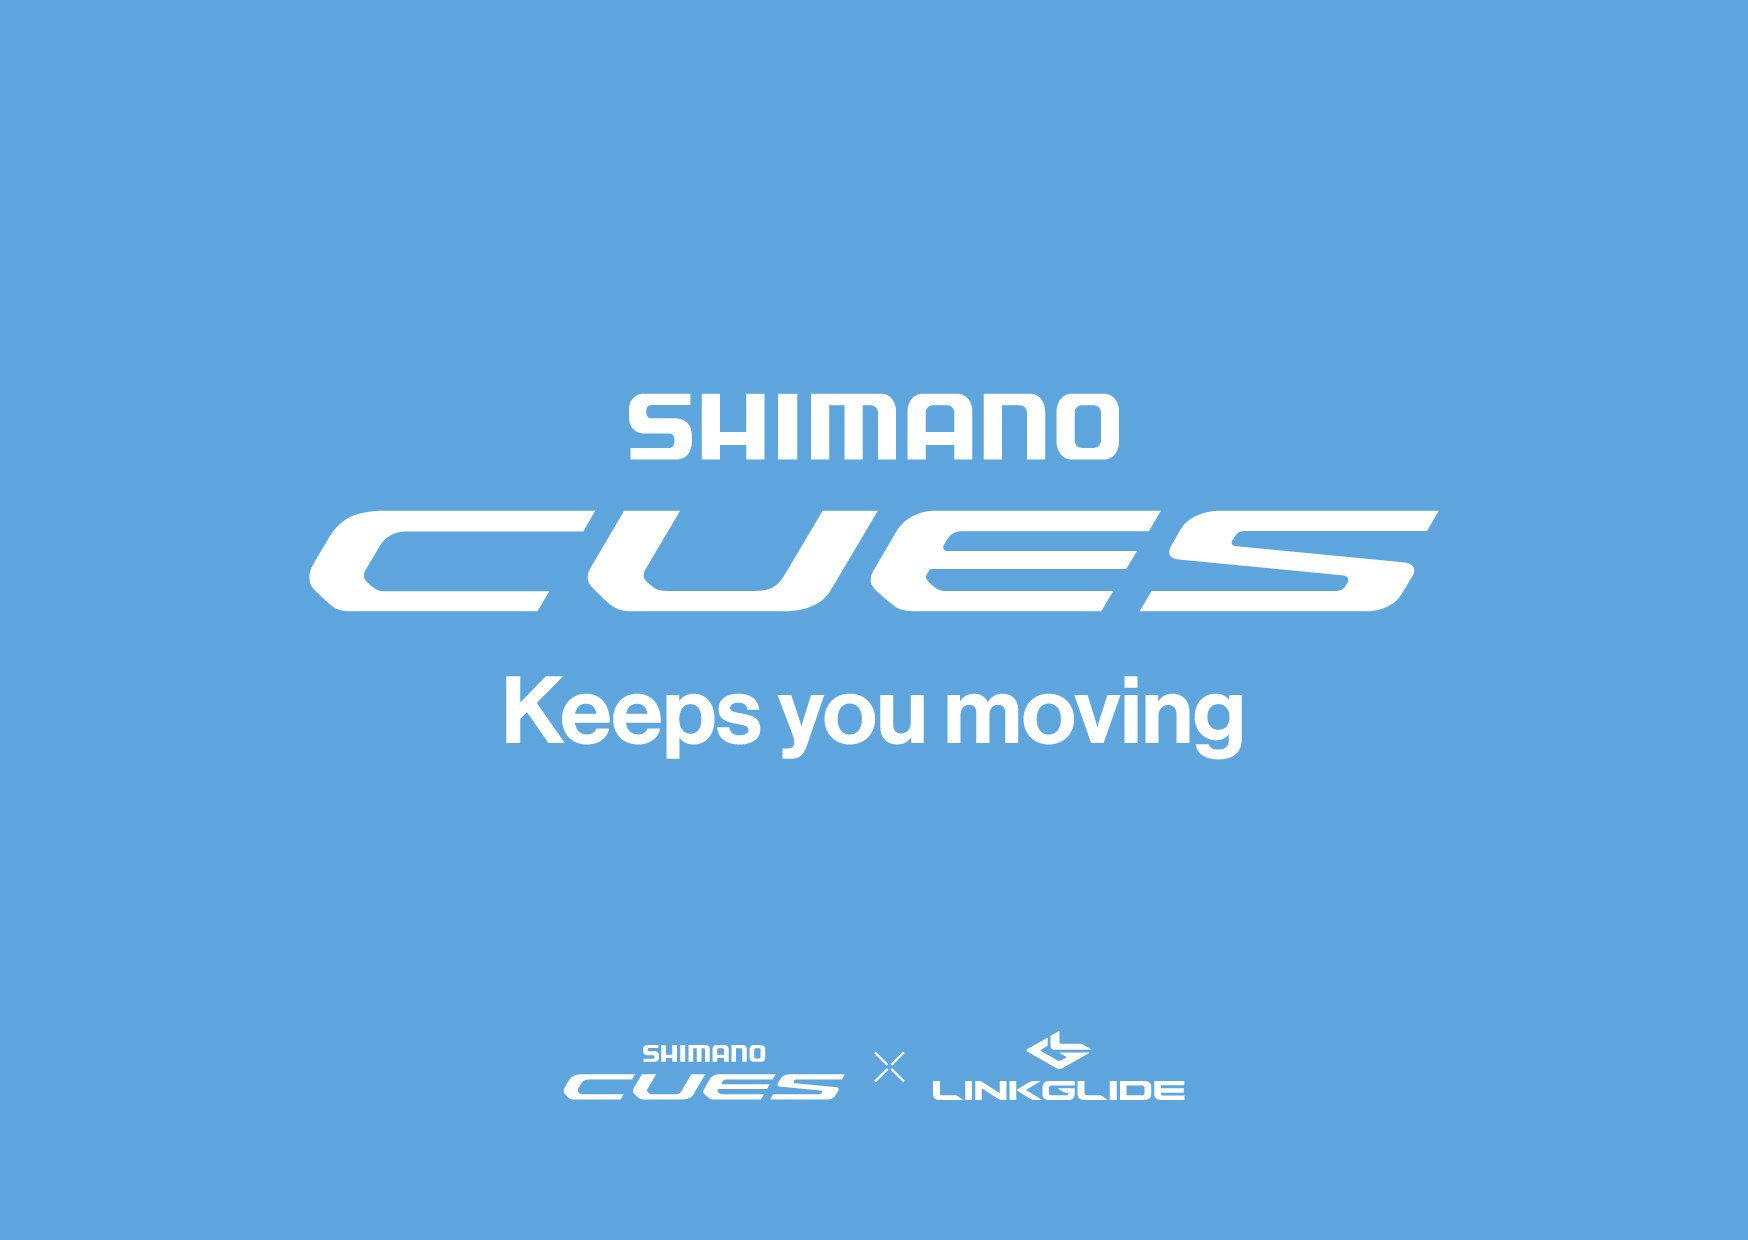 Shimano CUES keeps you moving NSMB Shimano